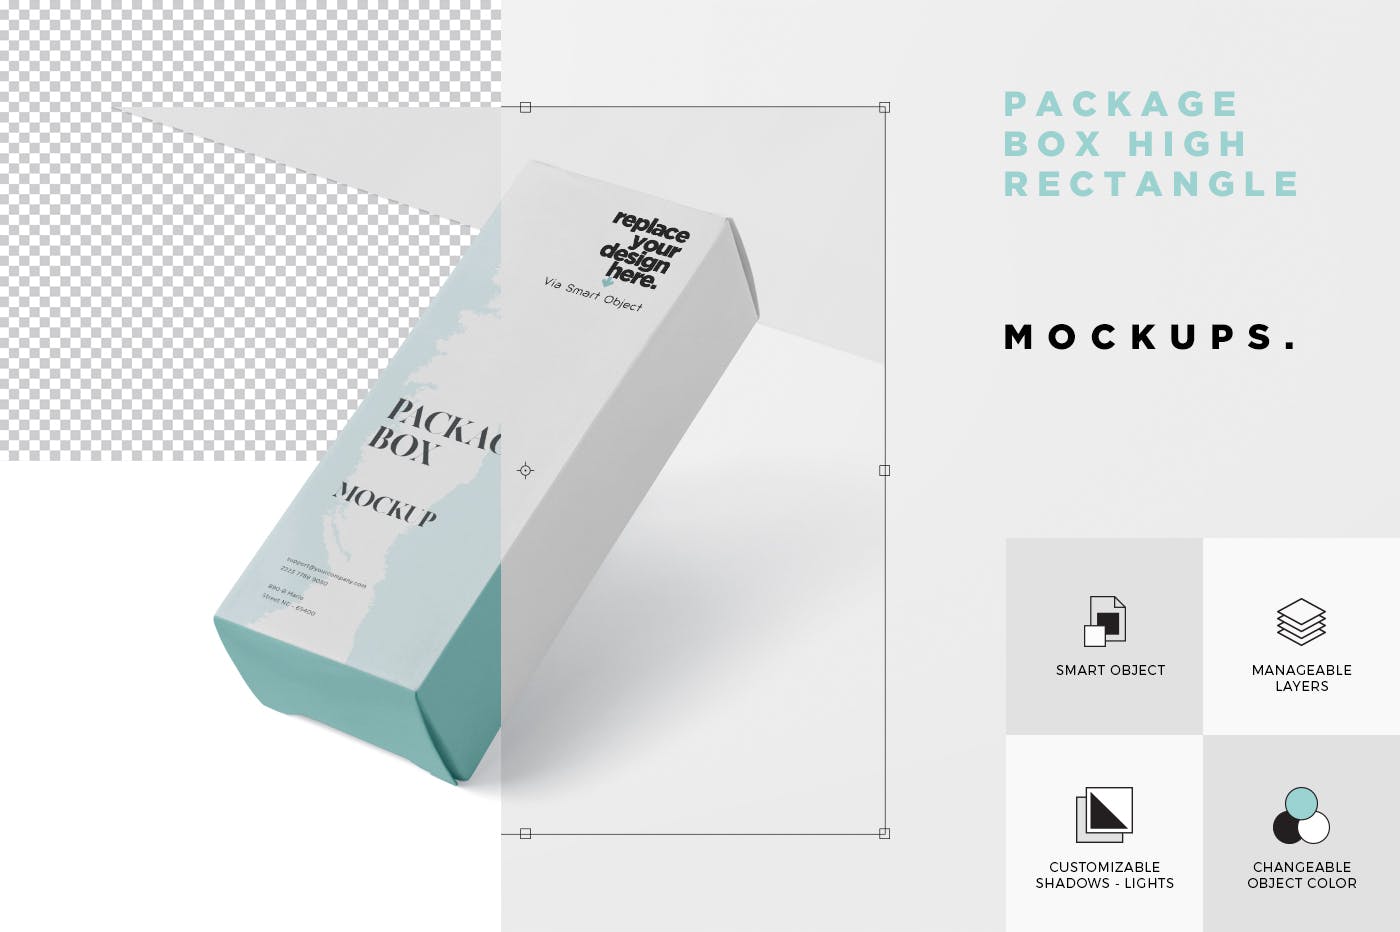 简约风多用途产品包装纸盒设计效果图蚂蚁素材精选 Package Box Mock-Up – High Rectangle Shape插图(5)